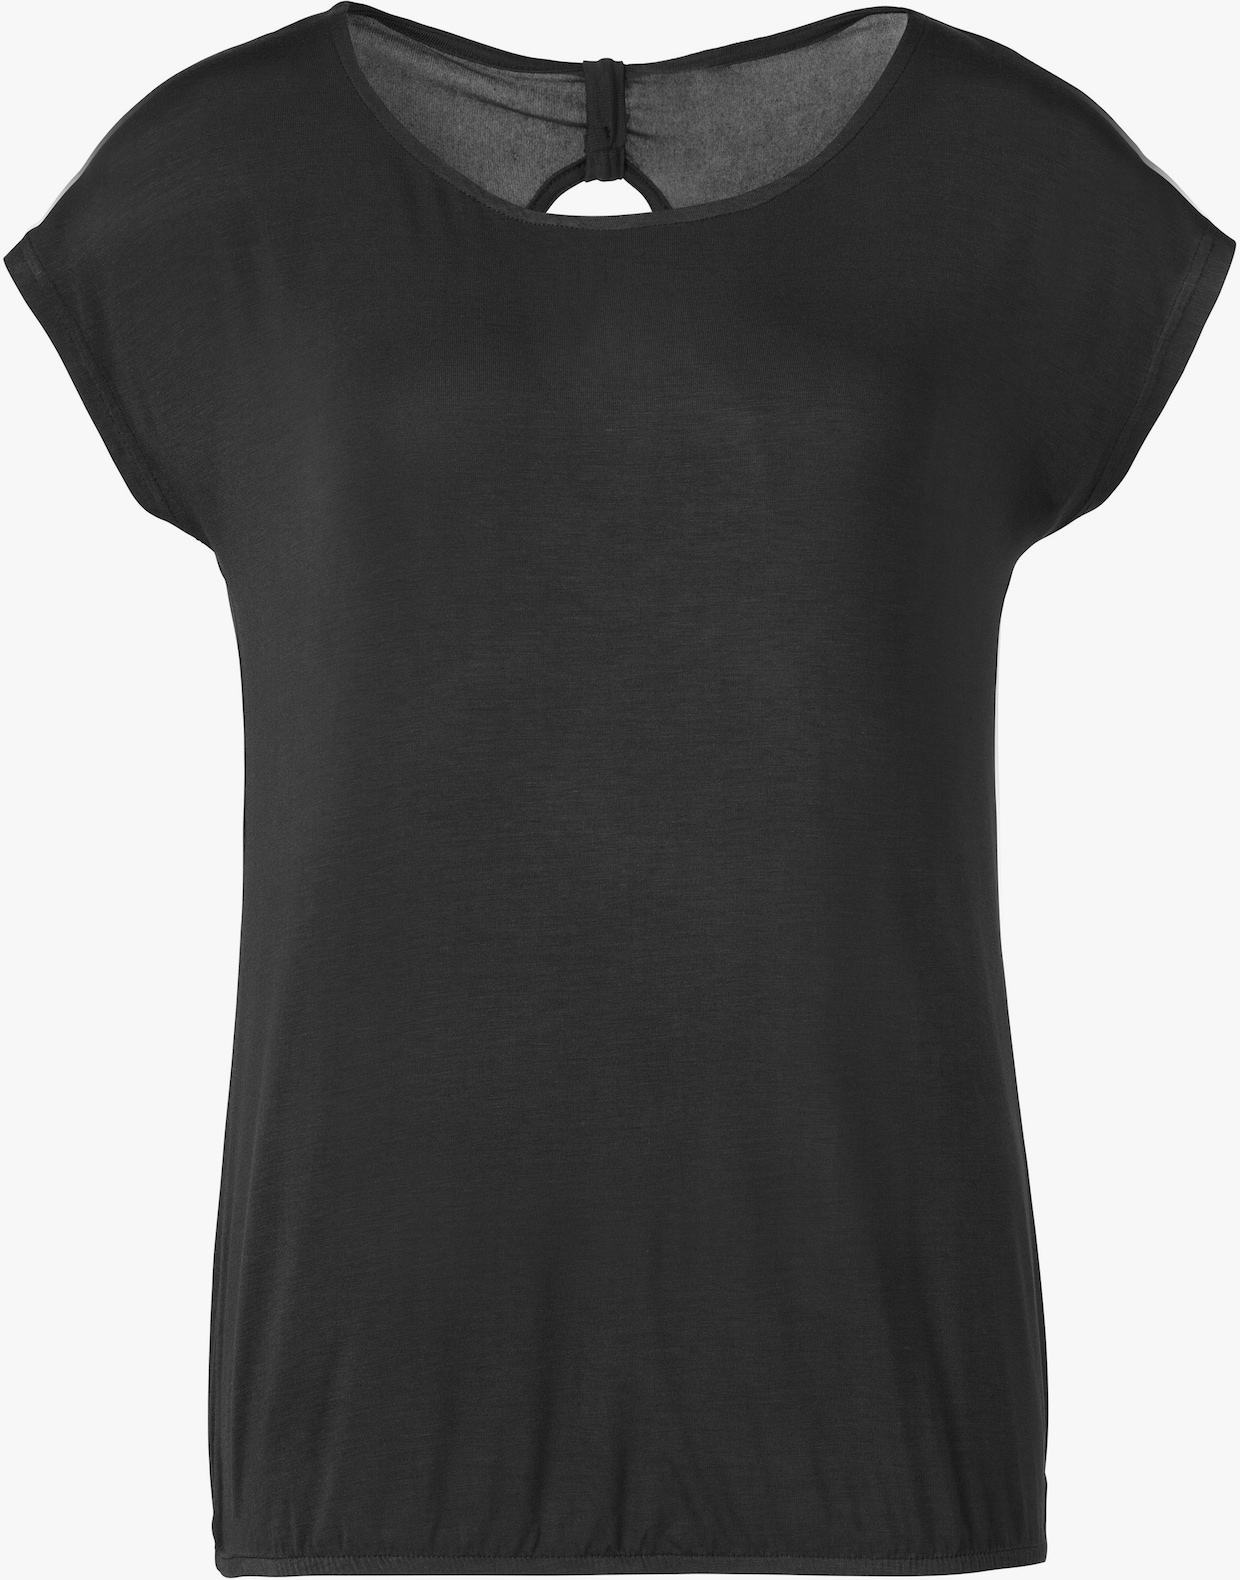 Vivance T-Shirt - mint, schwarz